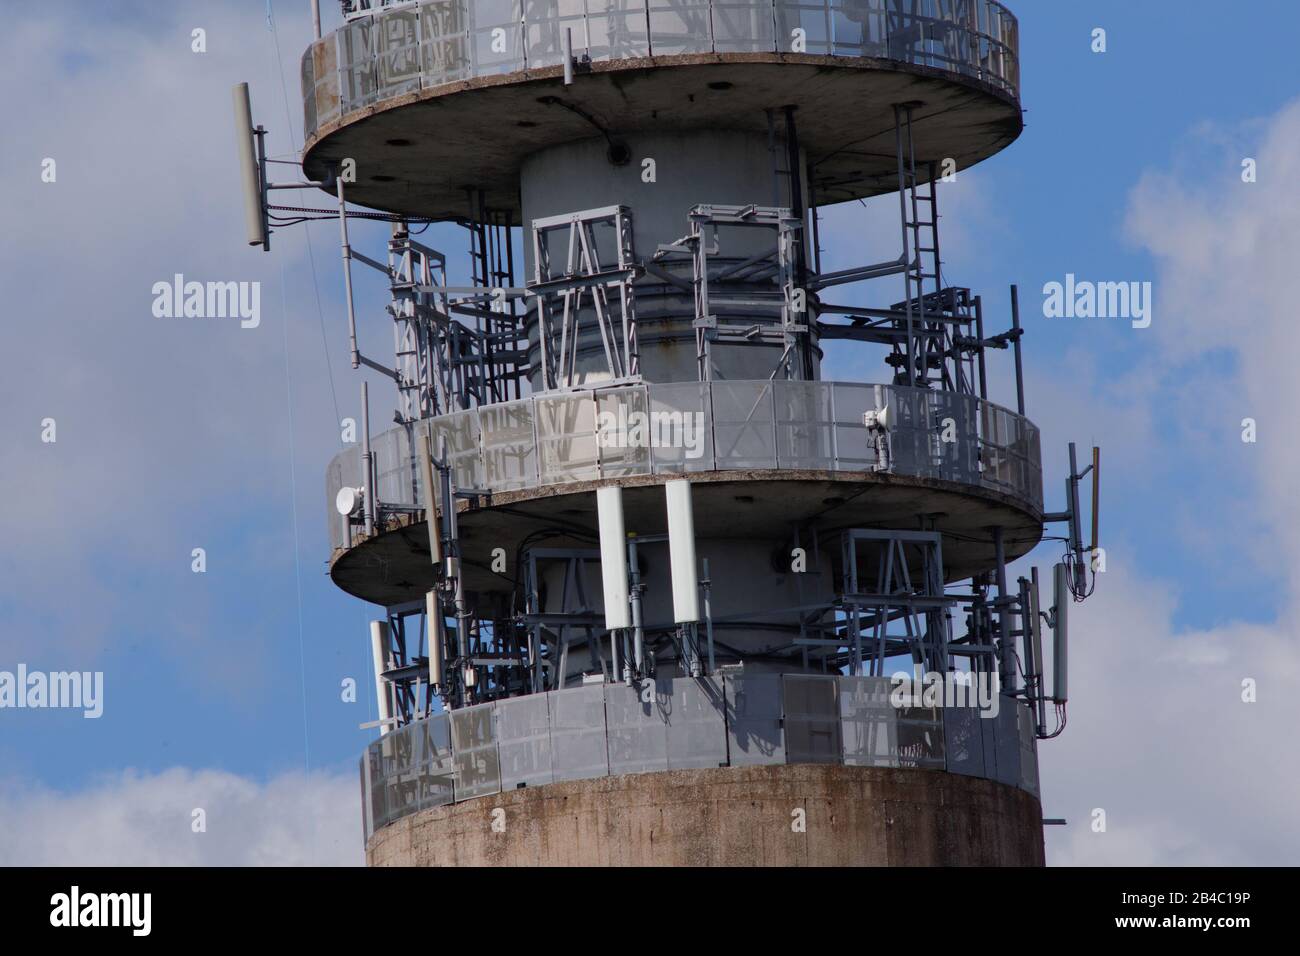 Heaton Park BT Tower: Inizialmente costruito per fornire parte della dorsale delle comunicazioni del Regno Unito per sopravvivere a un attacco nucleare. Vicino al lago artificiale Heaton Park di Manchester. Foto Stock